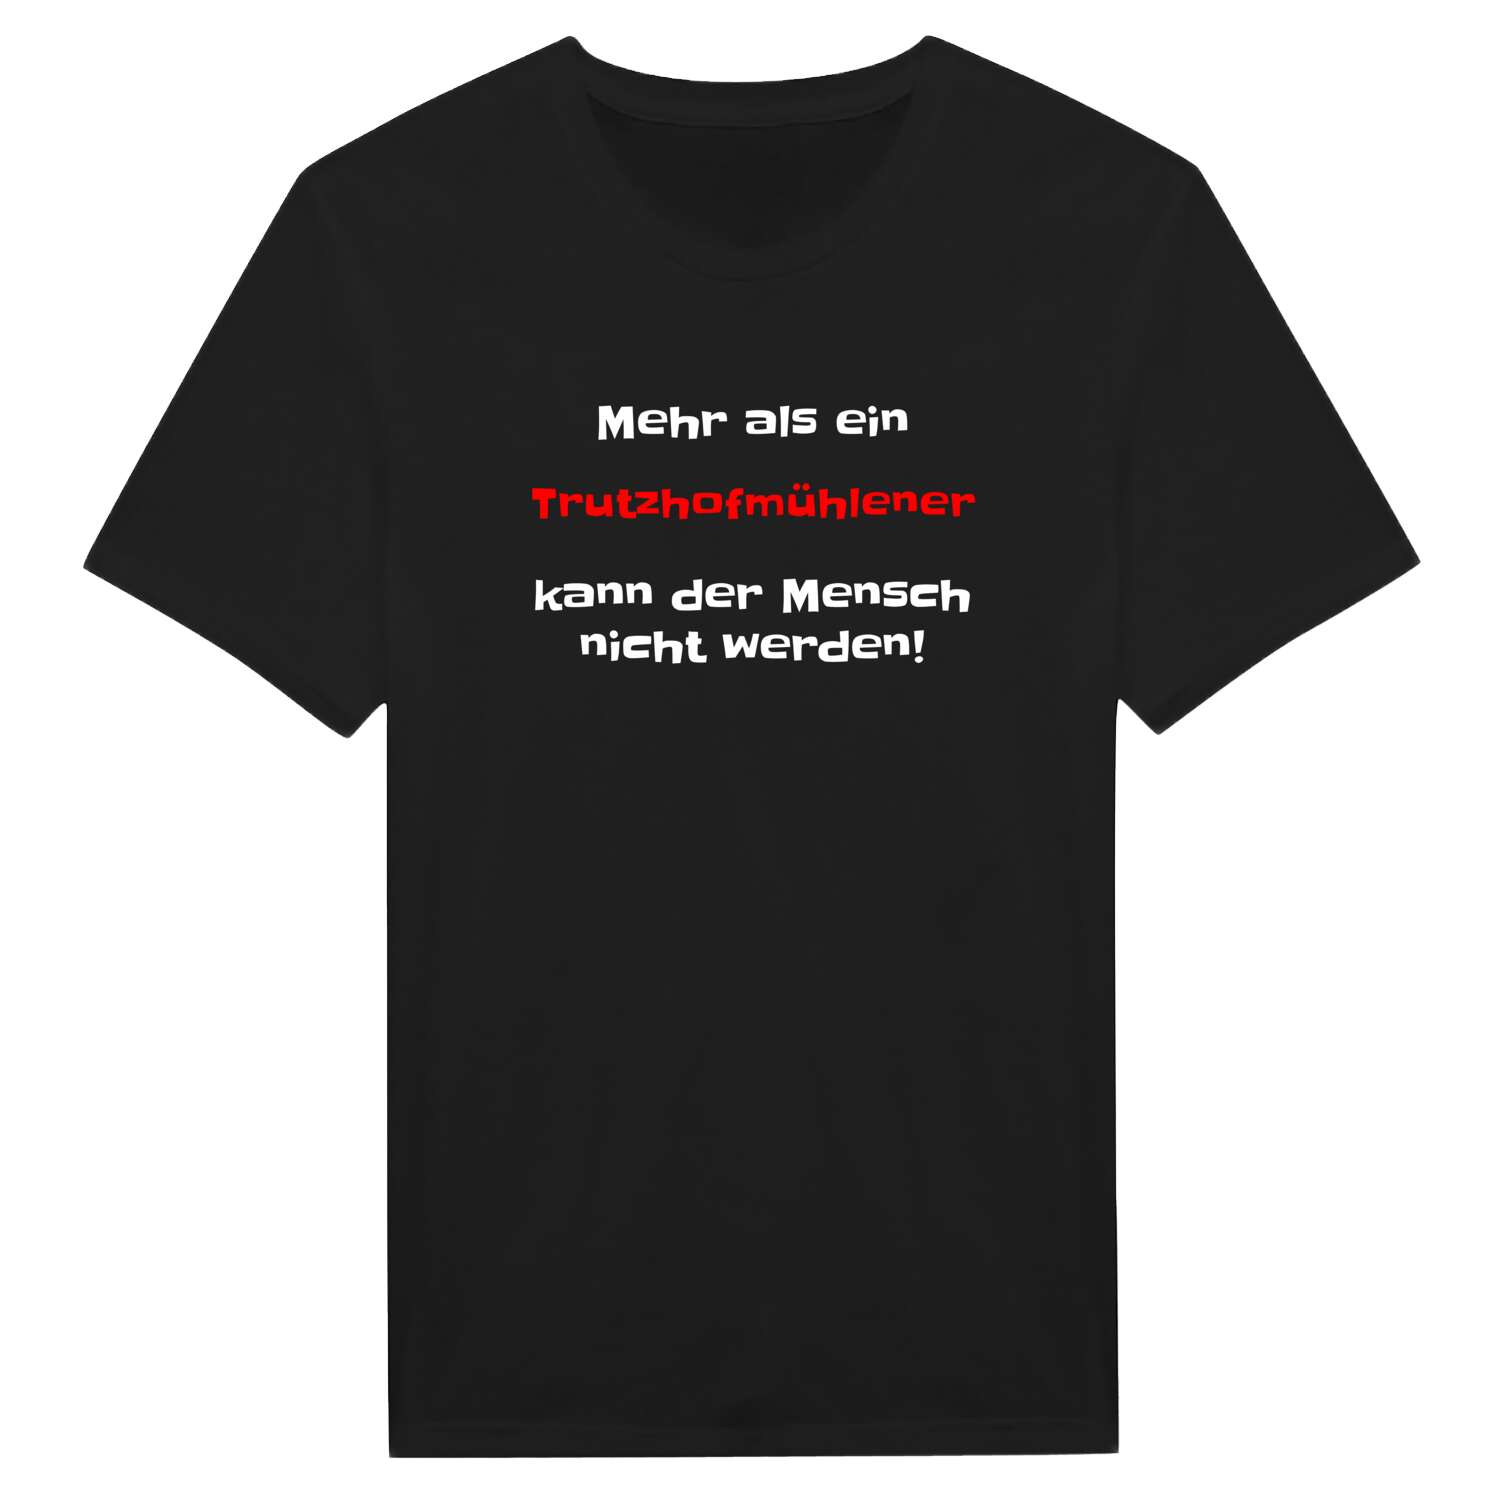 Trutzhofmühle T-Shirt »Mehr als ein«